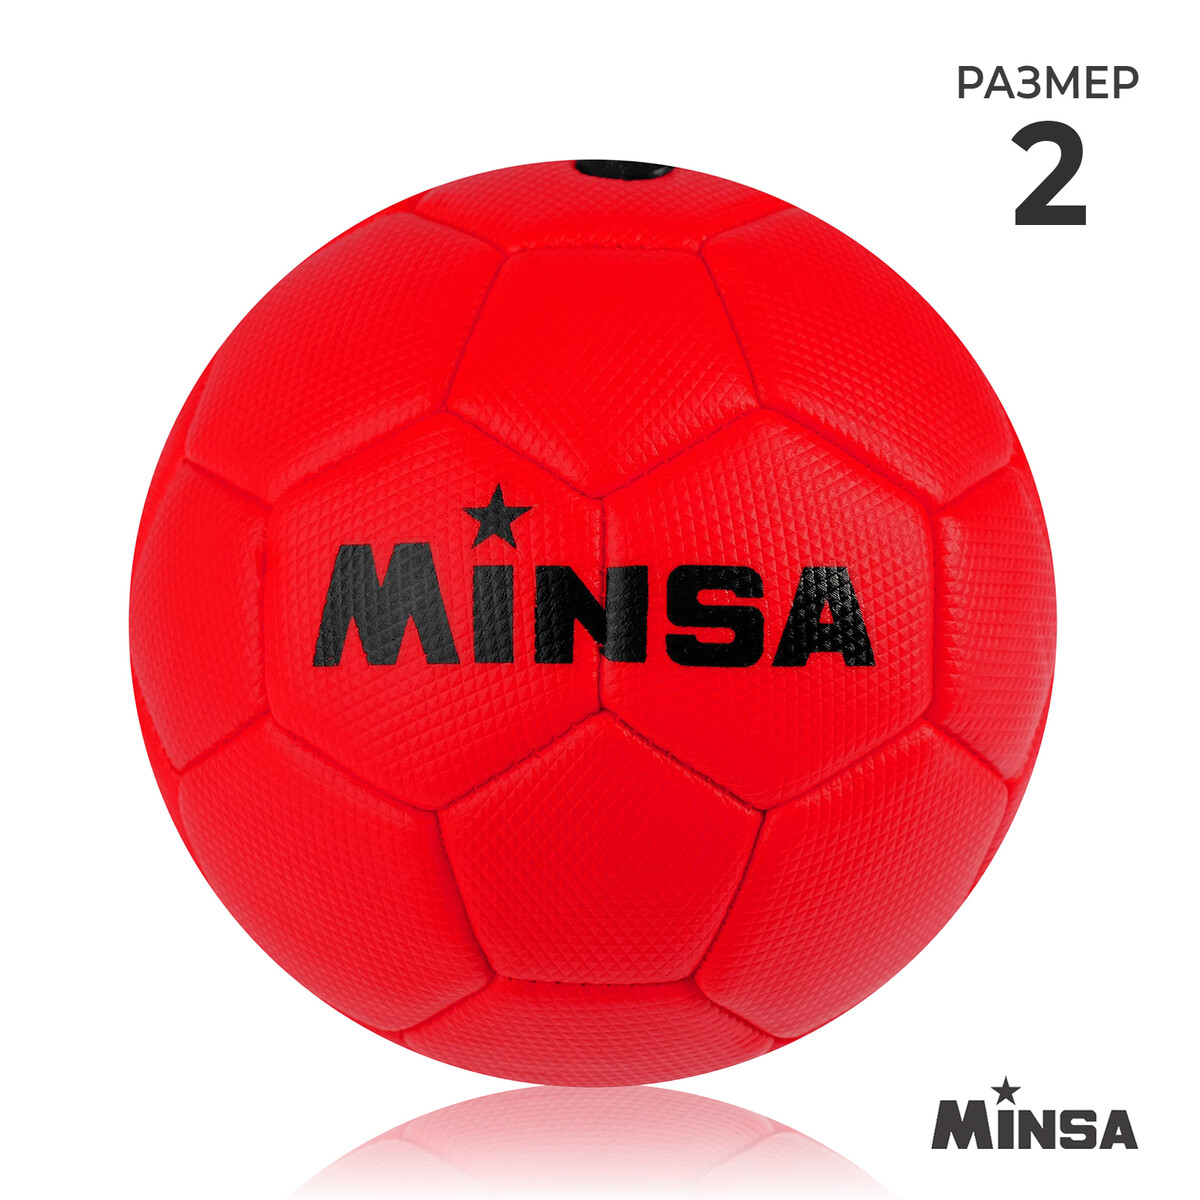 Мяч футбольный minsa, пвх, машинная сшивка, 32 панели, р. 2 мяч футбольный minsa classic pvc машинная сшивка 32 панели р 5